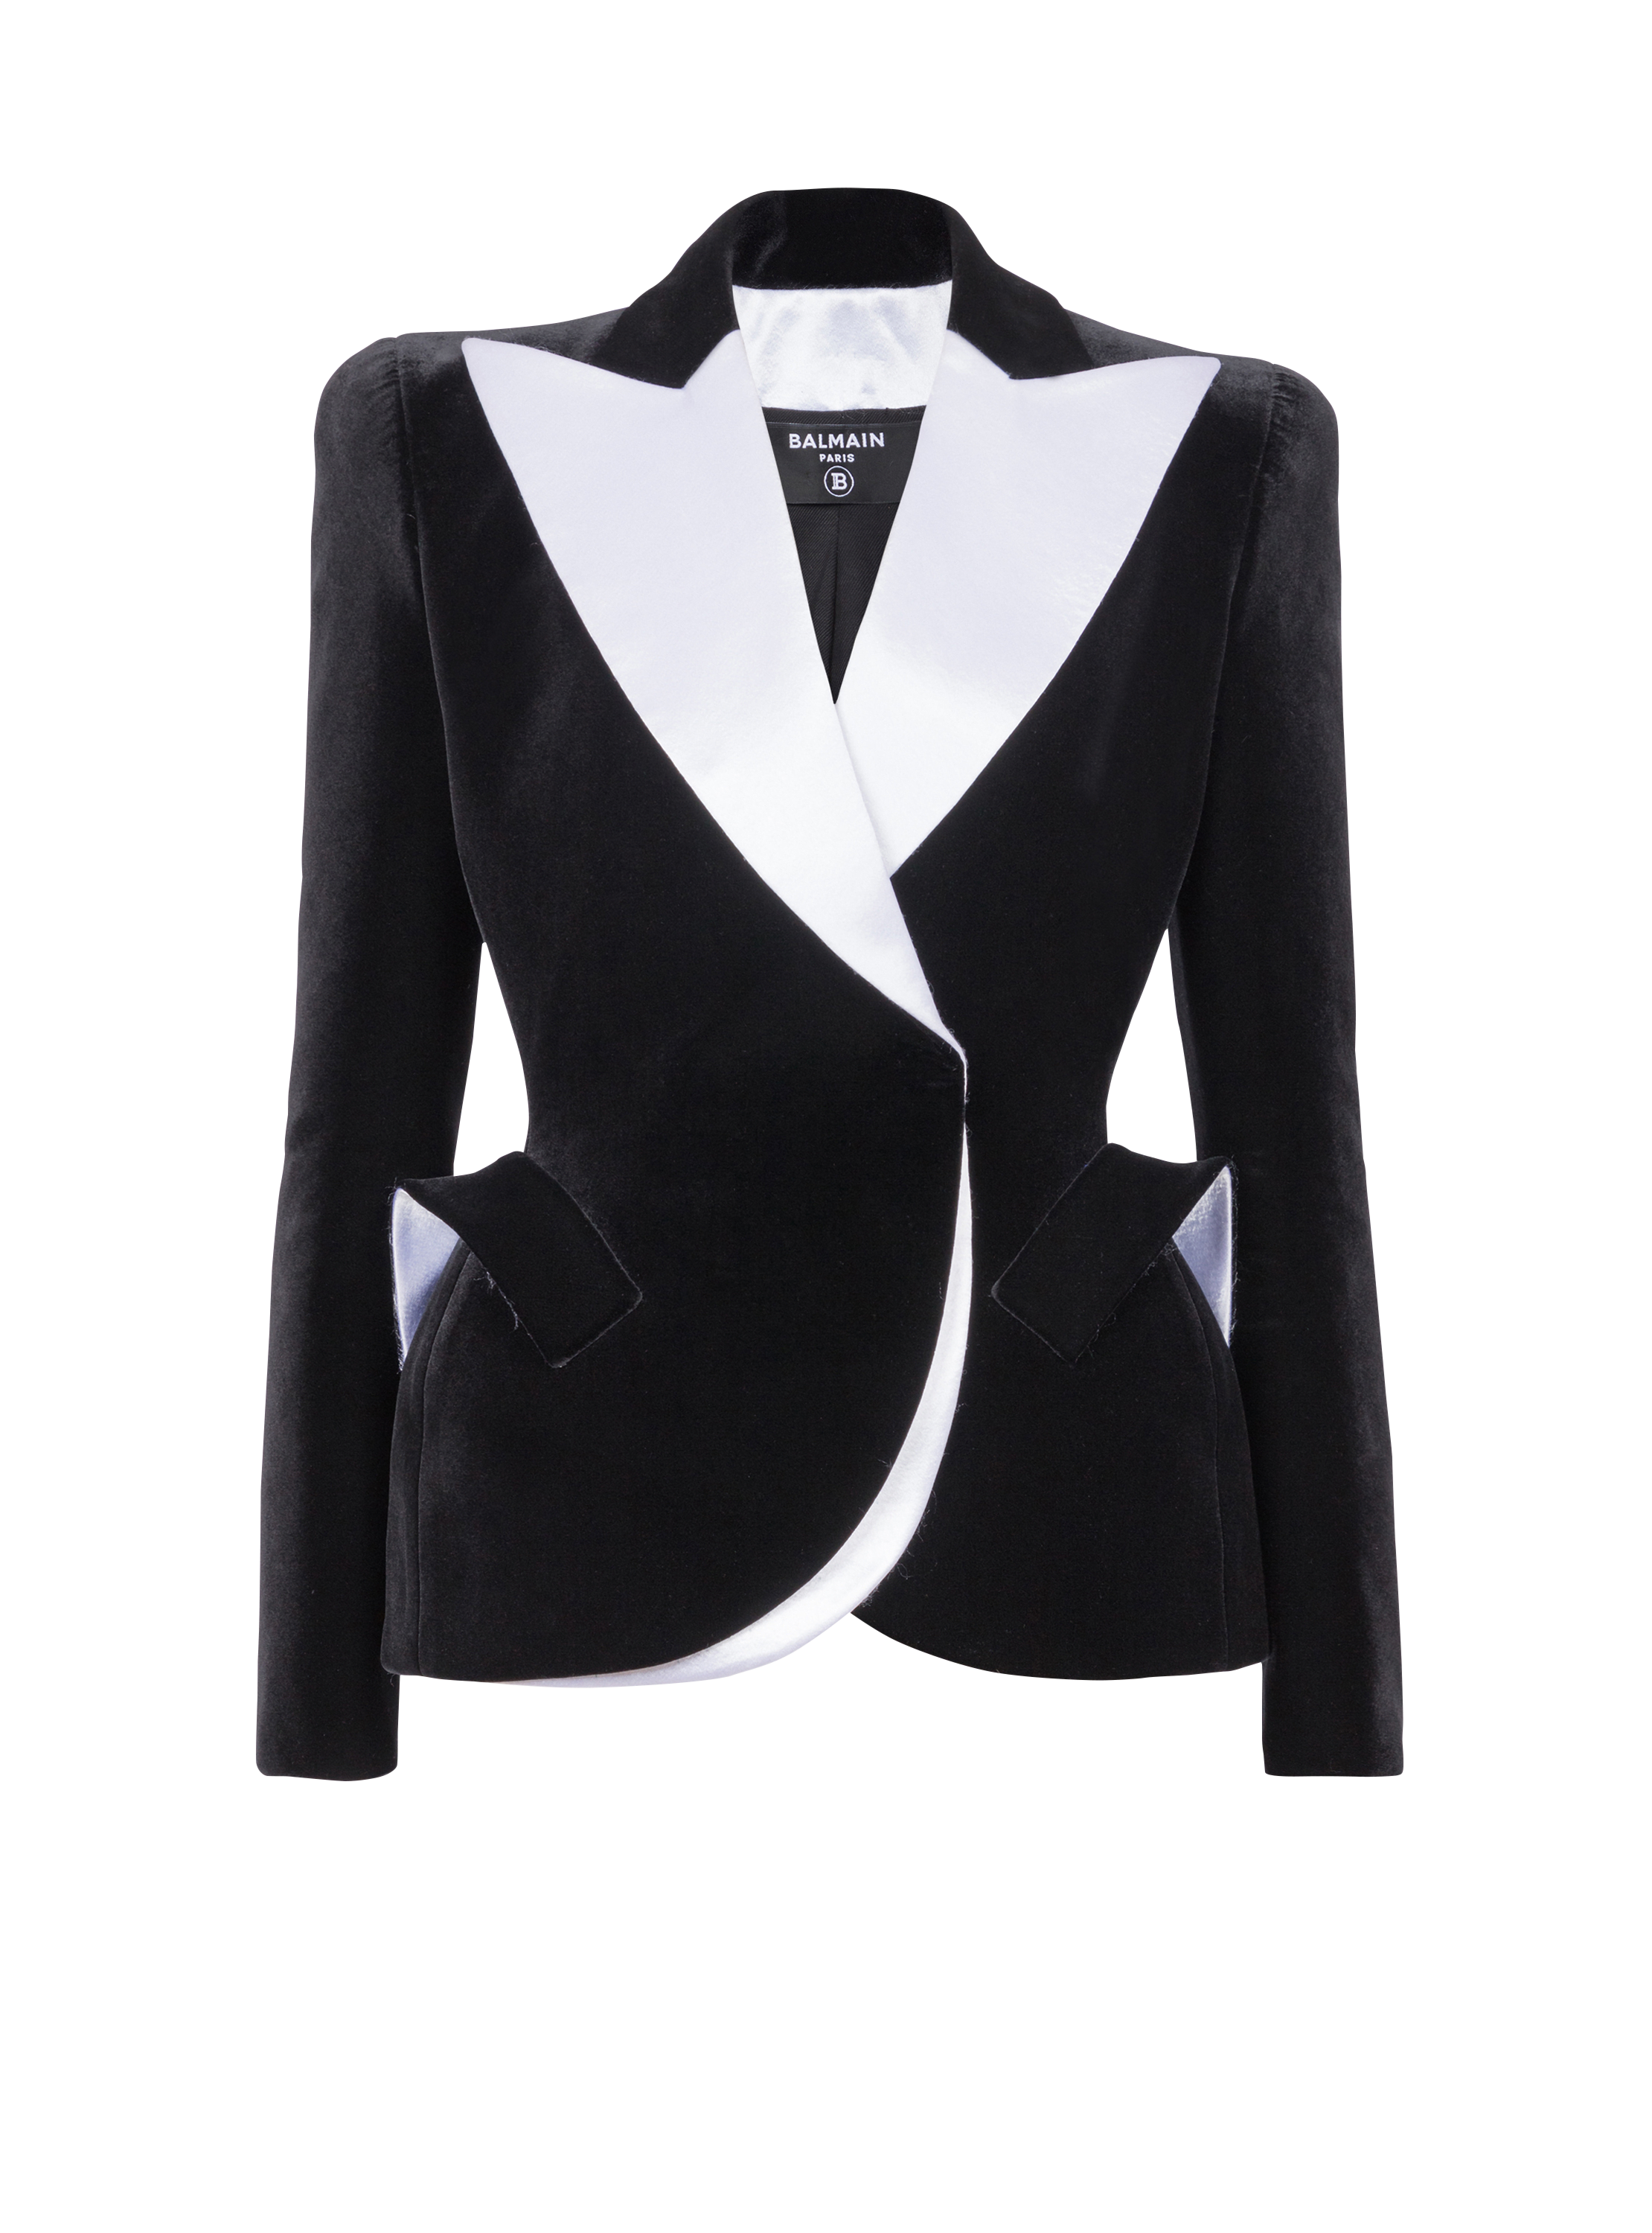 Structured jacket in velvet and satin, black, hi-res